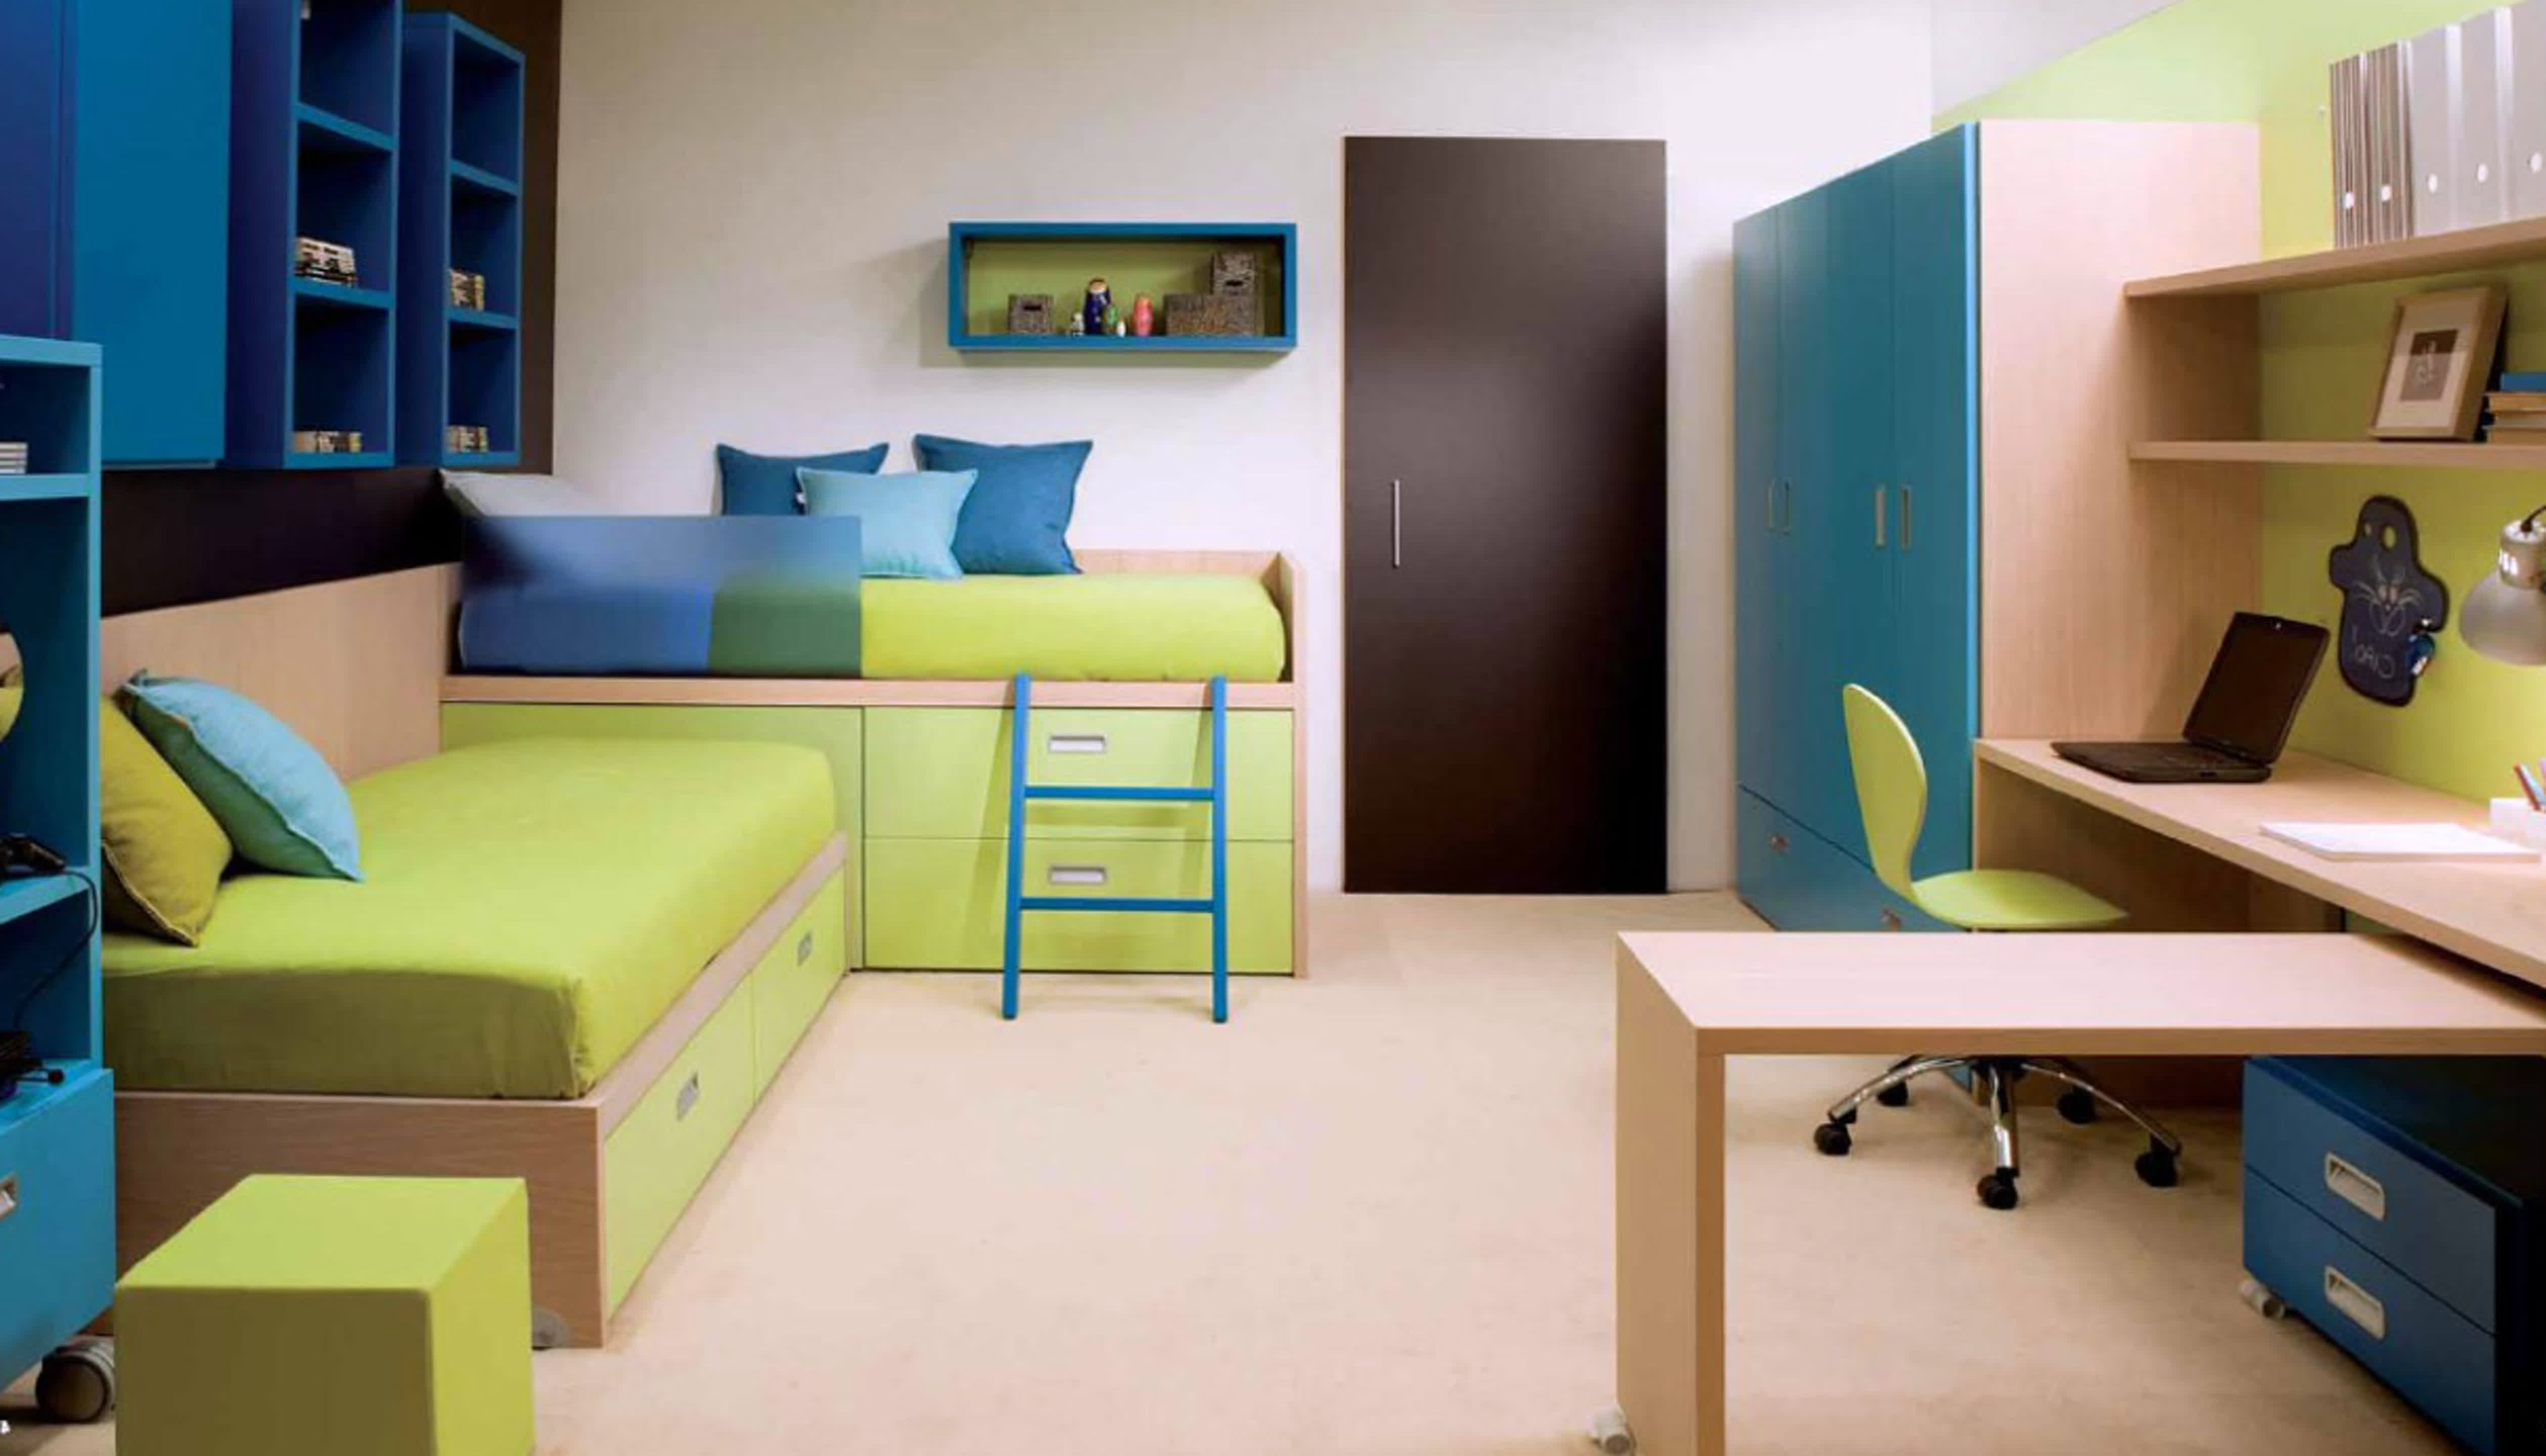 Дизайн спальни для детей мальчика и девочки